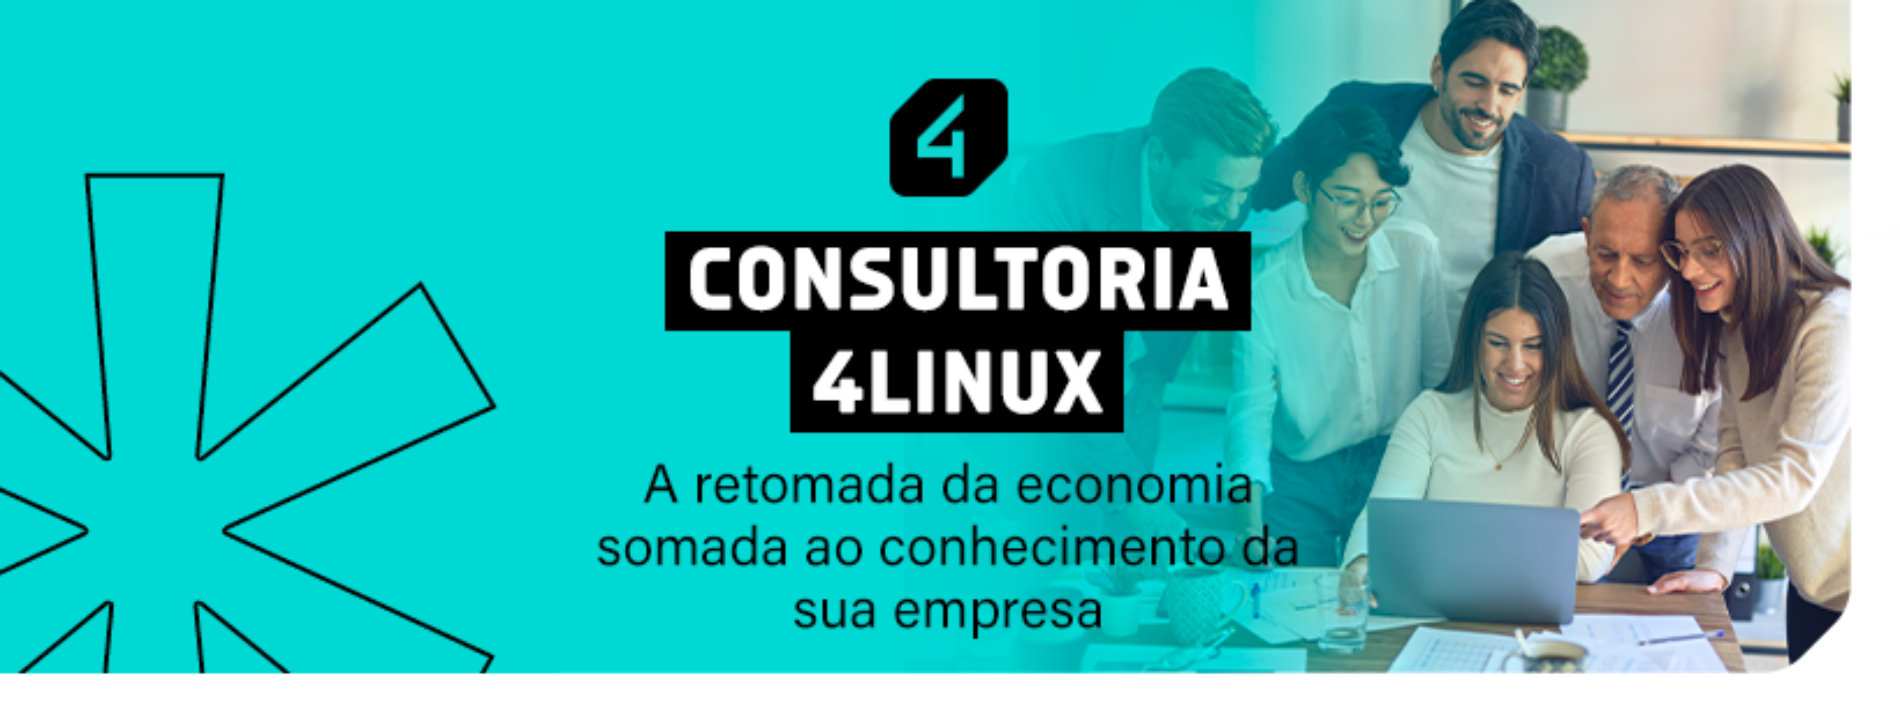 Consultoria 4Linux: A retomada da economia somada ao conhecimento da sua empresa